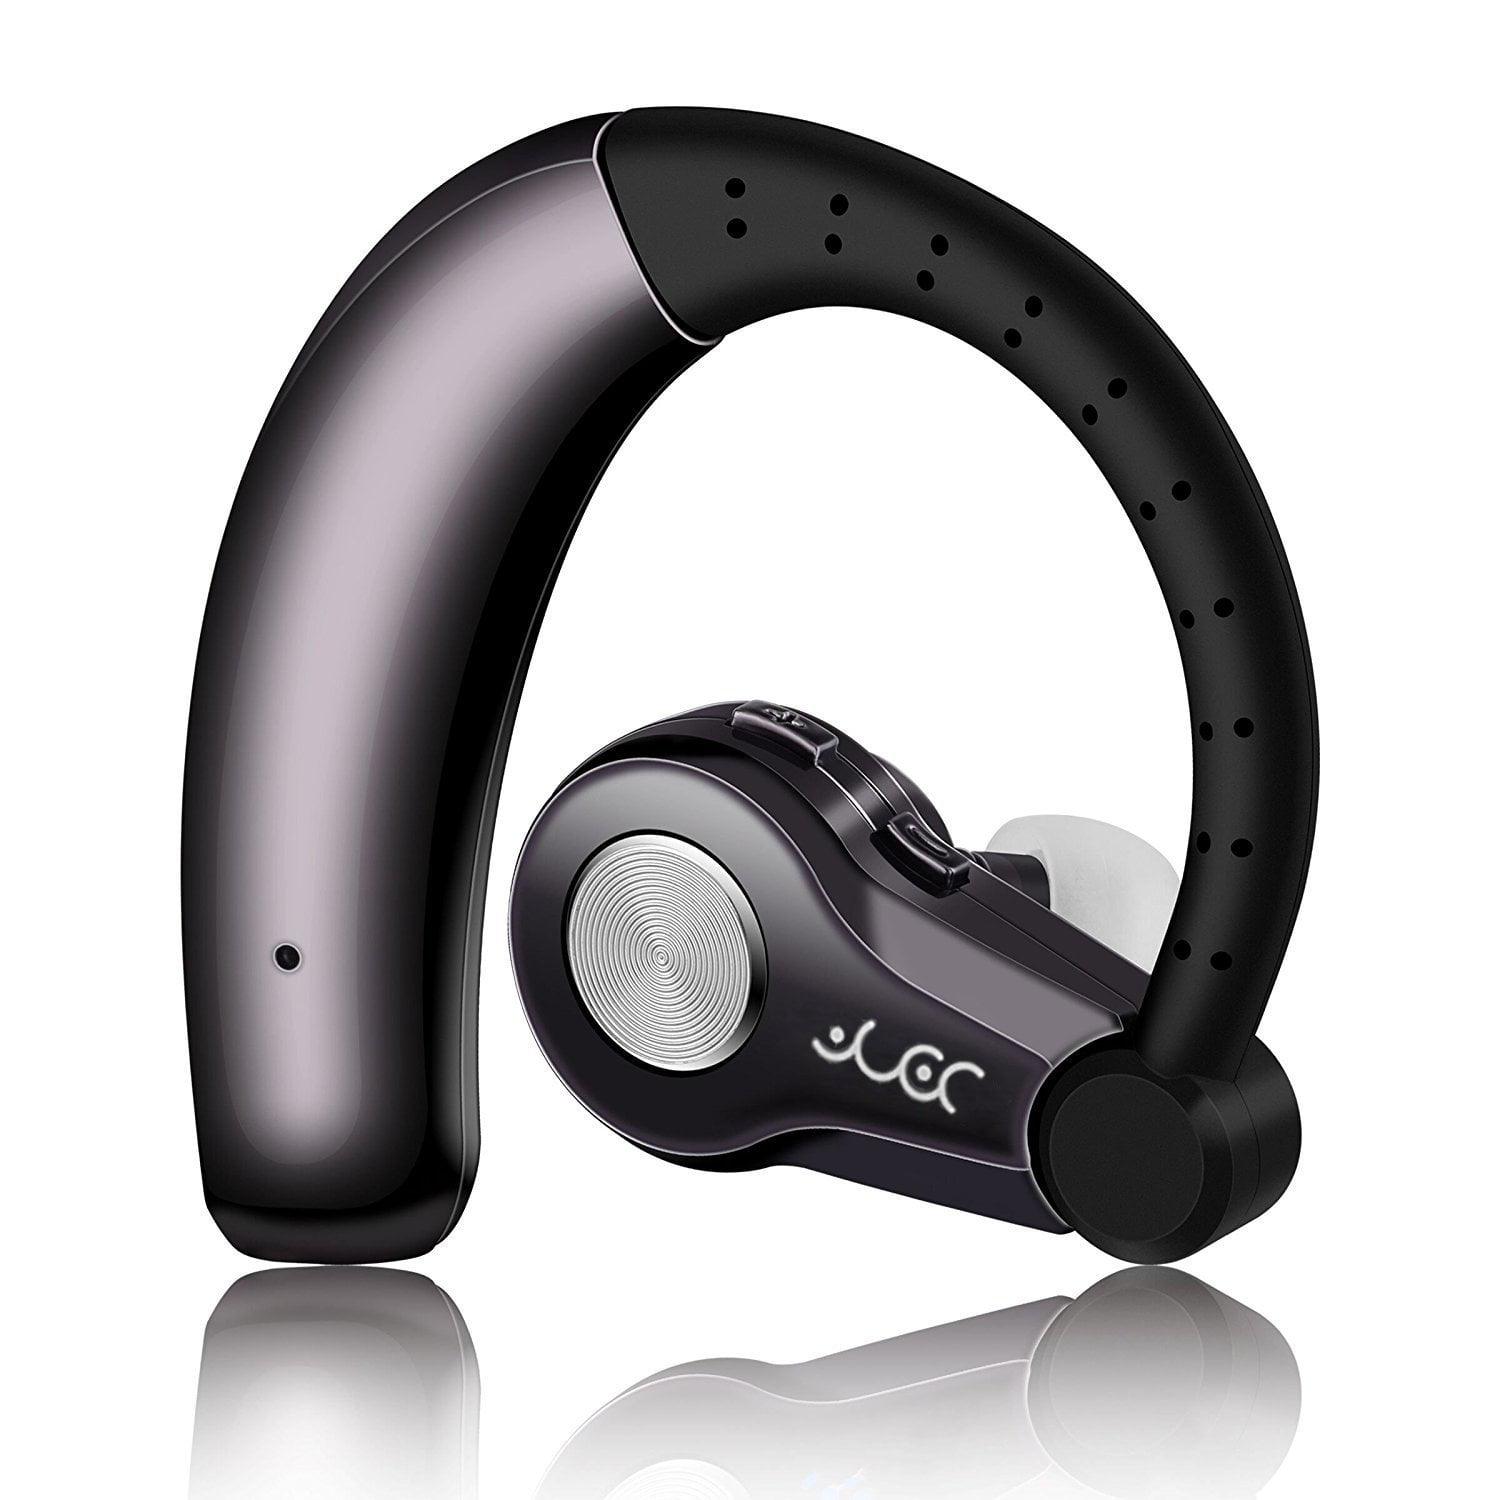 Popup-Fenster mit Echtzeit-Display 11 Bluetooth Kopfhörer kompatibel mit Apple Airpods Android/iPhone binaurale Bluetooth-Headsets für Ohr Drahtloses Touch-Bluetooth Noise-Cancelling-Kopfhörer